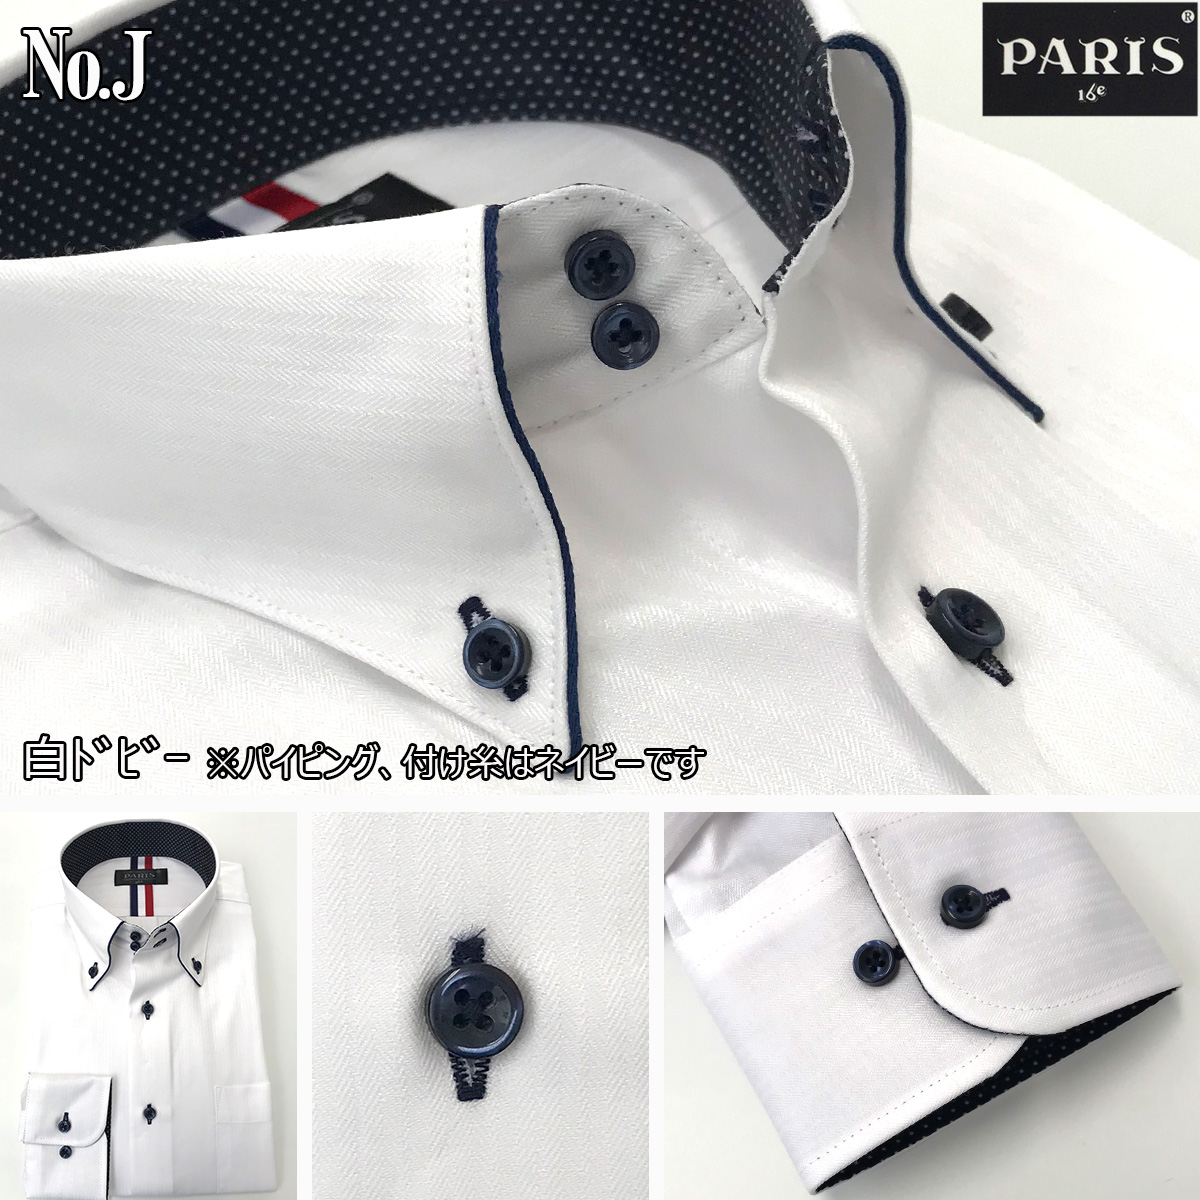 ワイシャツ 長袖 メンズ 形態安定 Yシャツ ボタンダウン 白 ホワイト ストライプ M L LL 単品 メール便送料無料